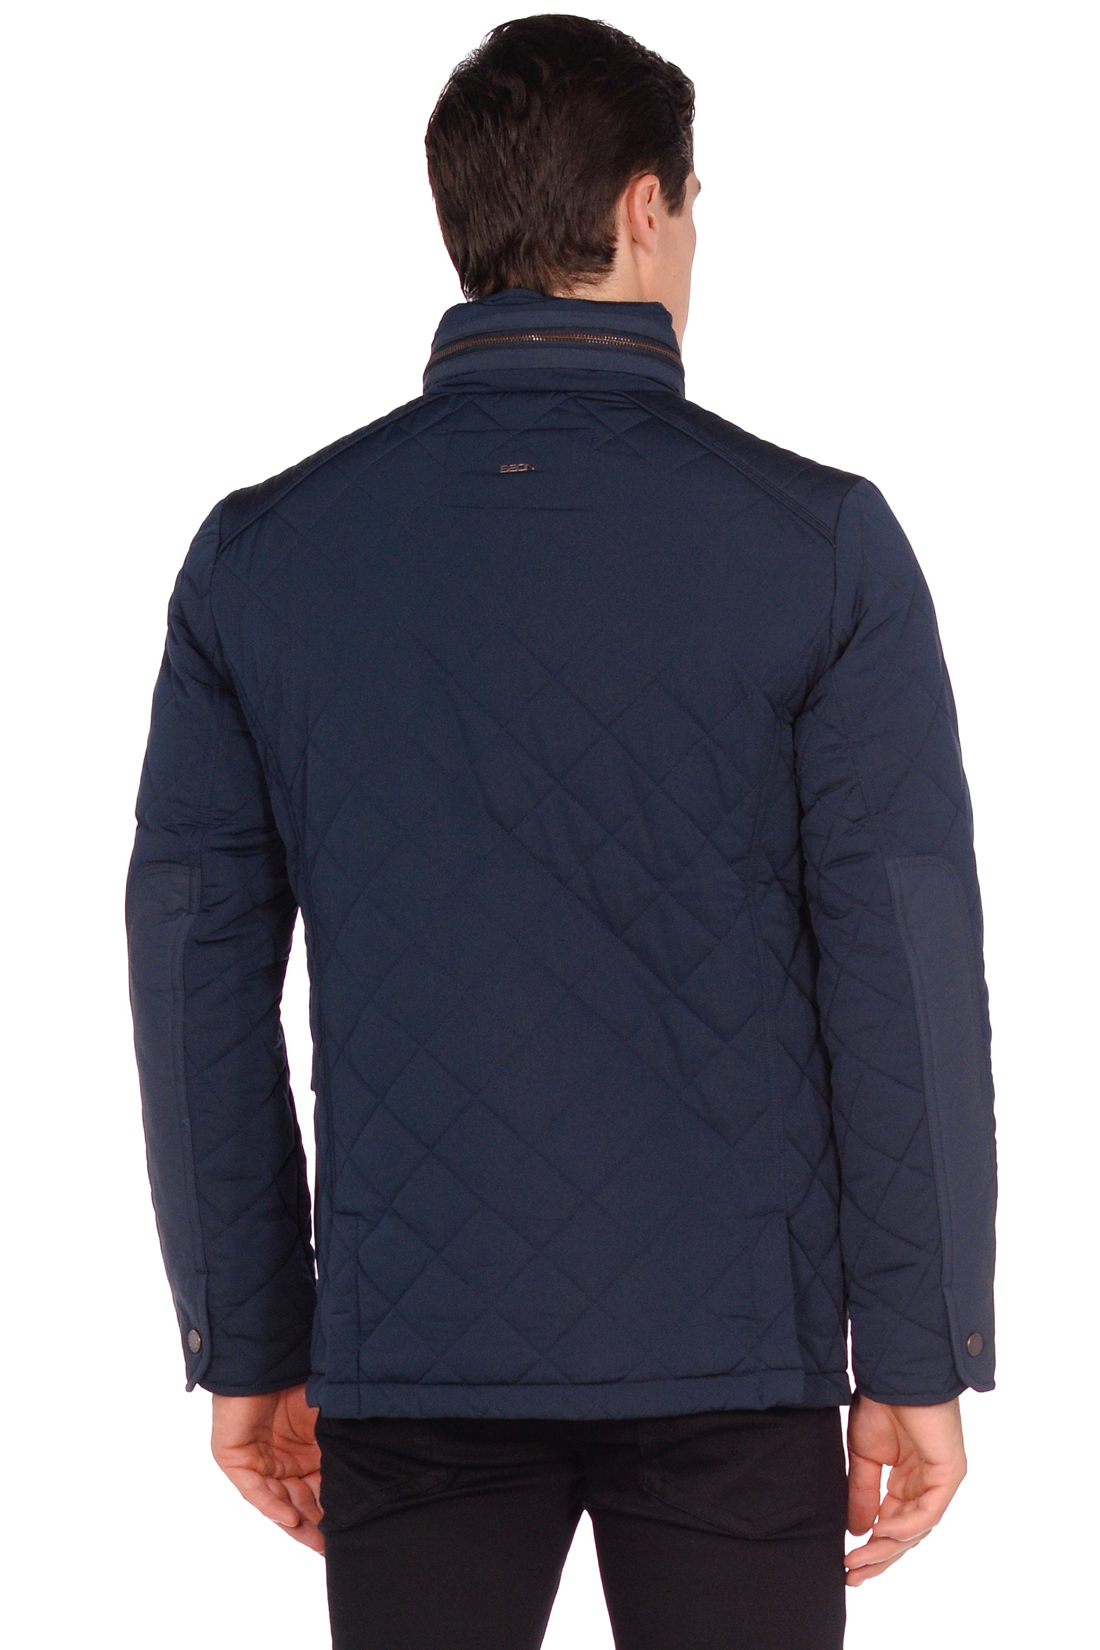 Стёганая куртка с тремя карманами (арт. baon B538503), размер XXL, цвет синий Стёганая куртка с тремя карманами (арт. baon B538503) - фото 4